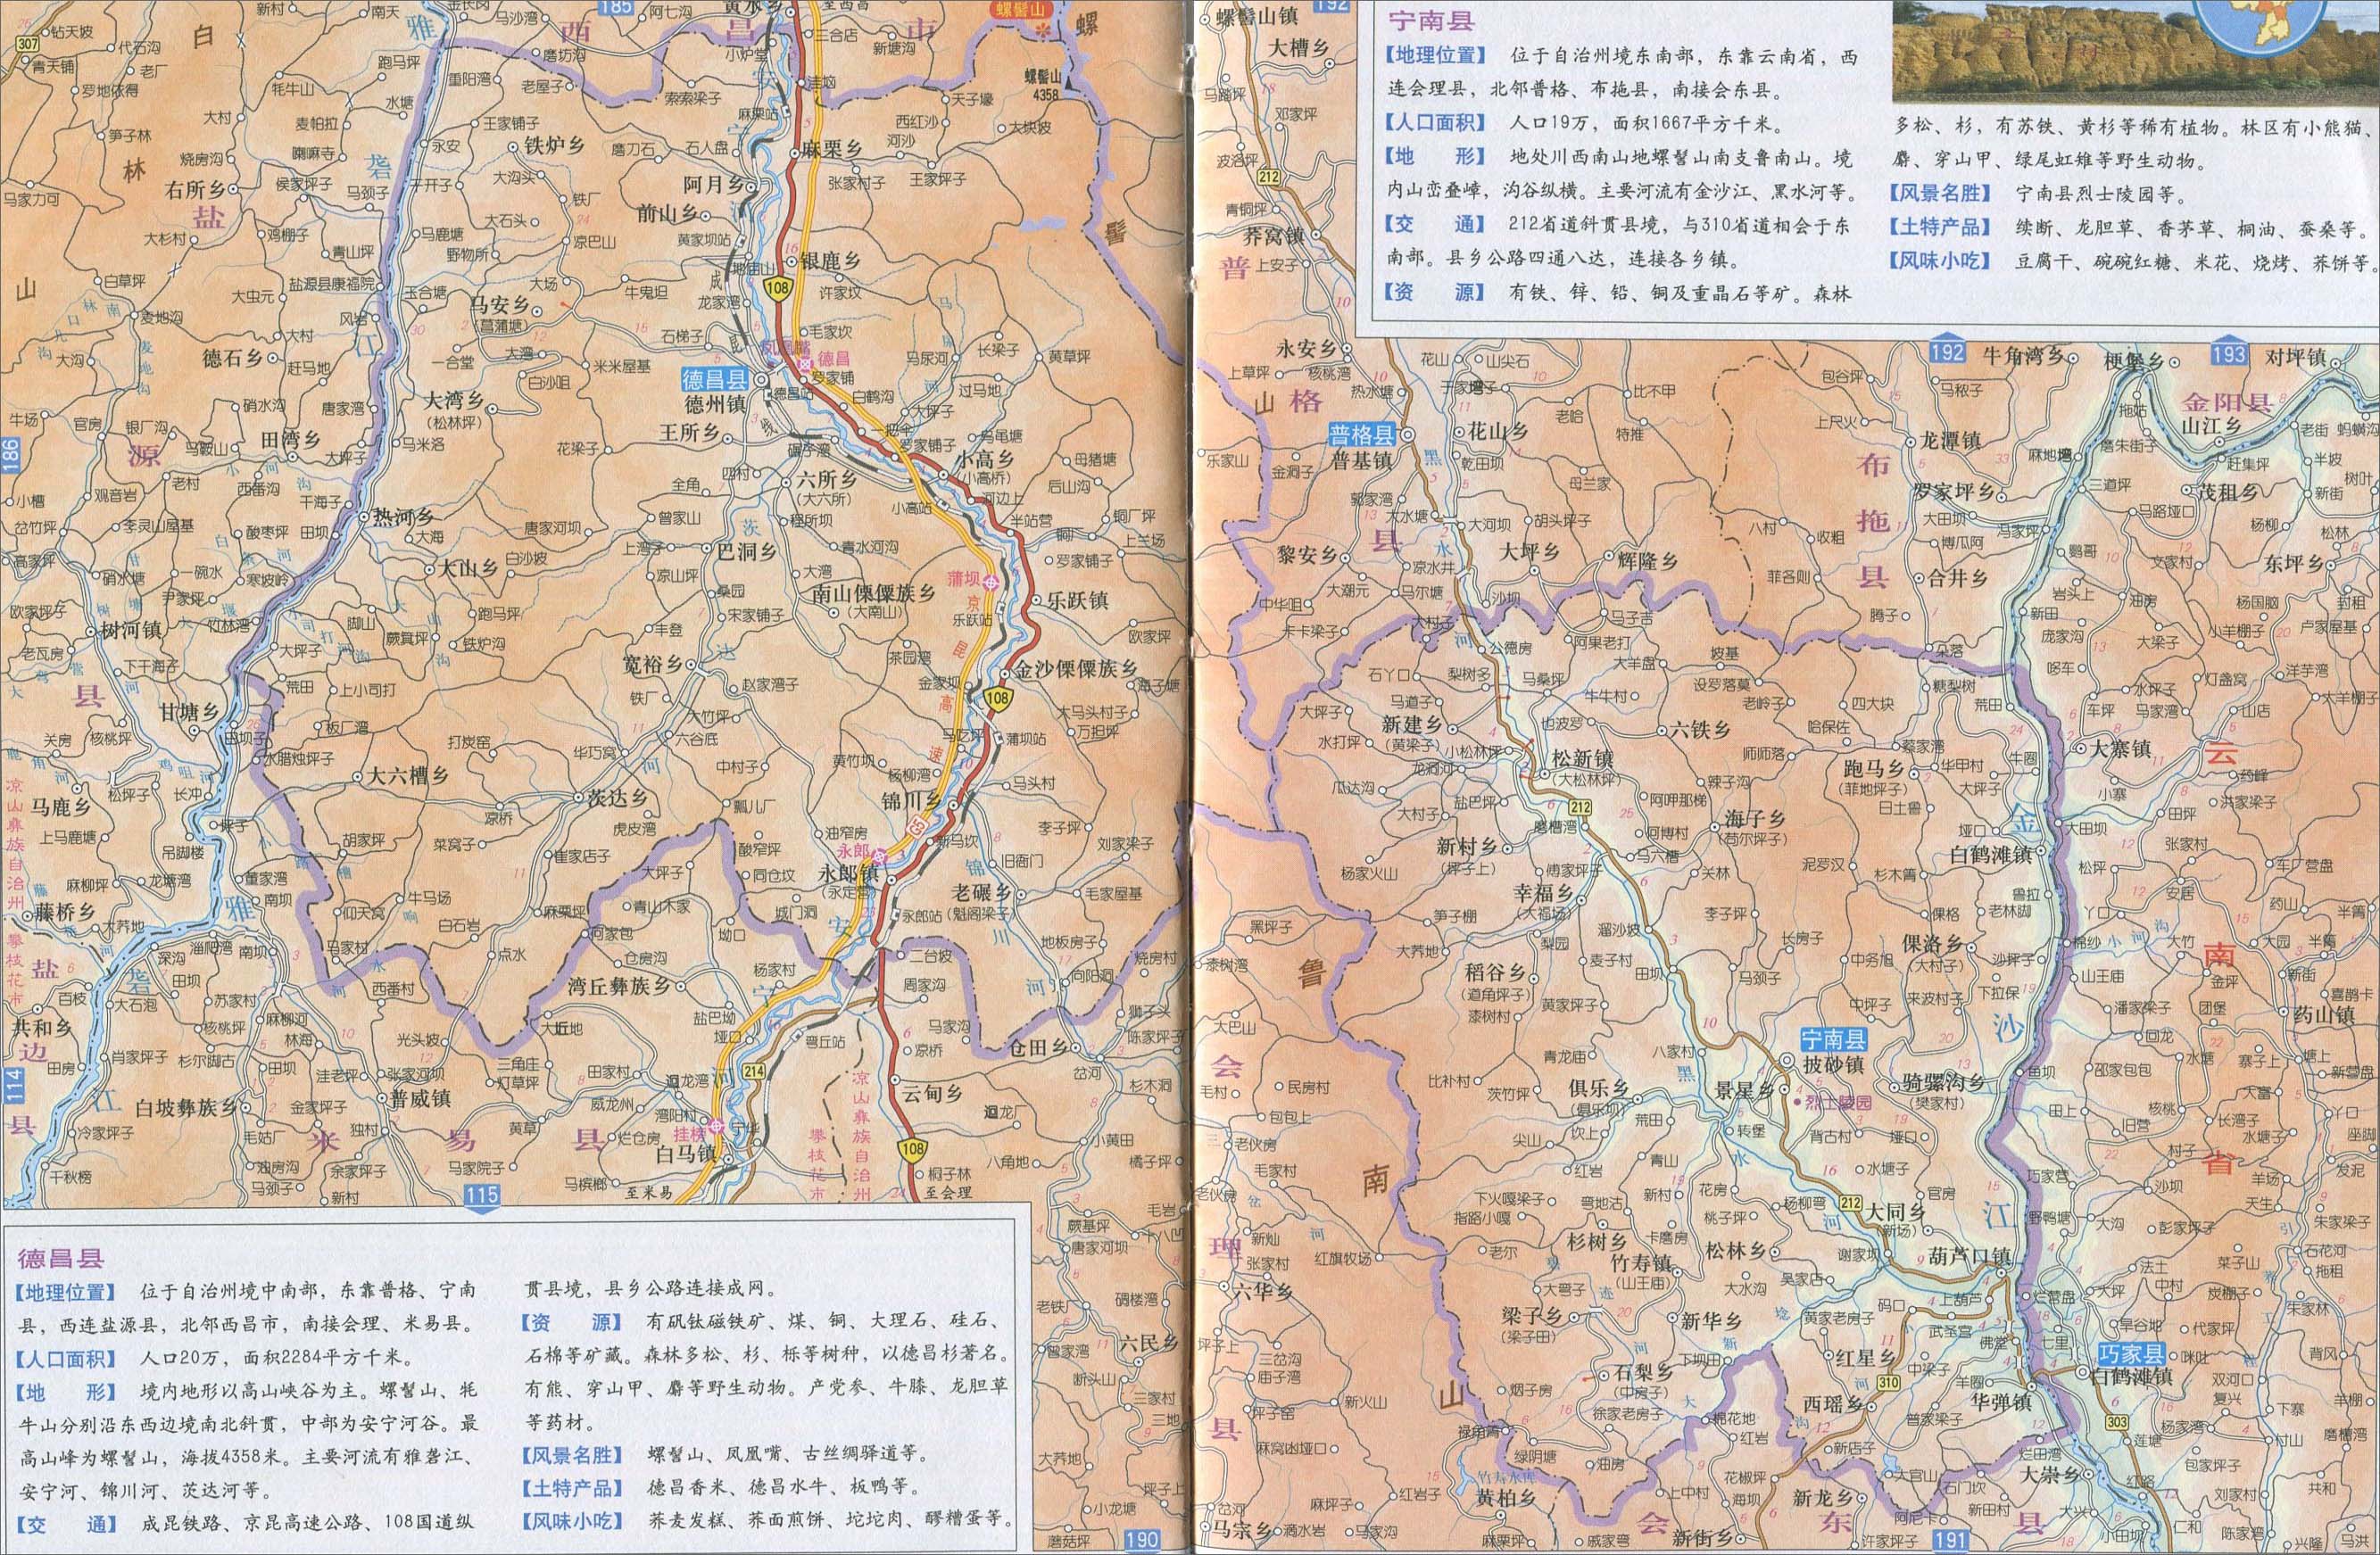 中国地图 四川 凉山州图片